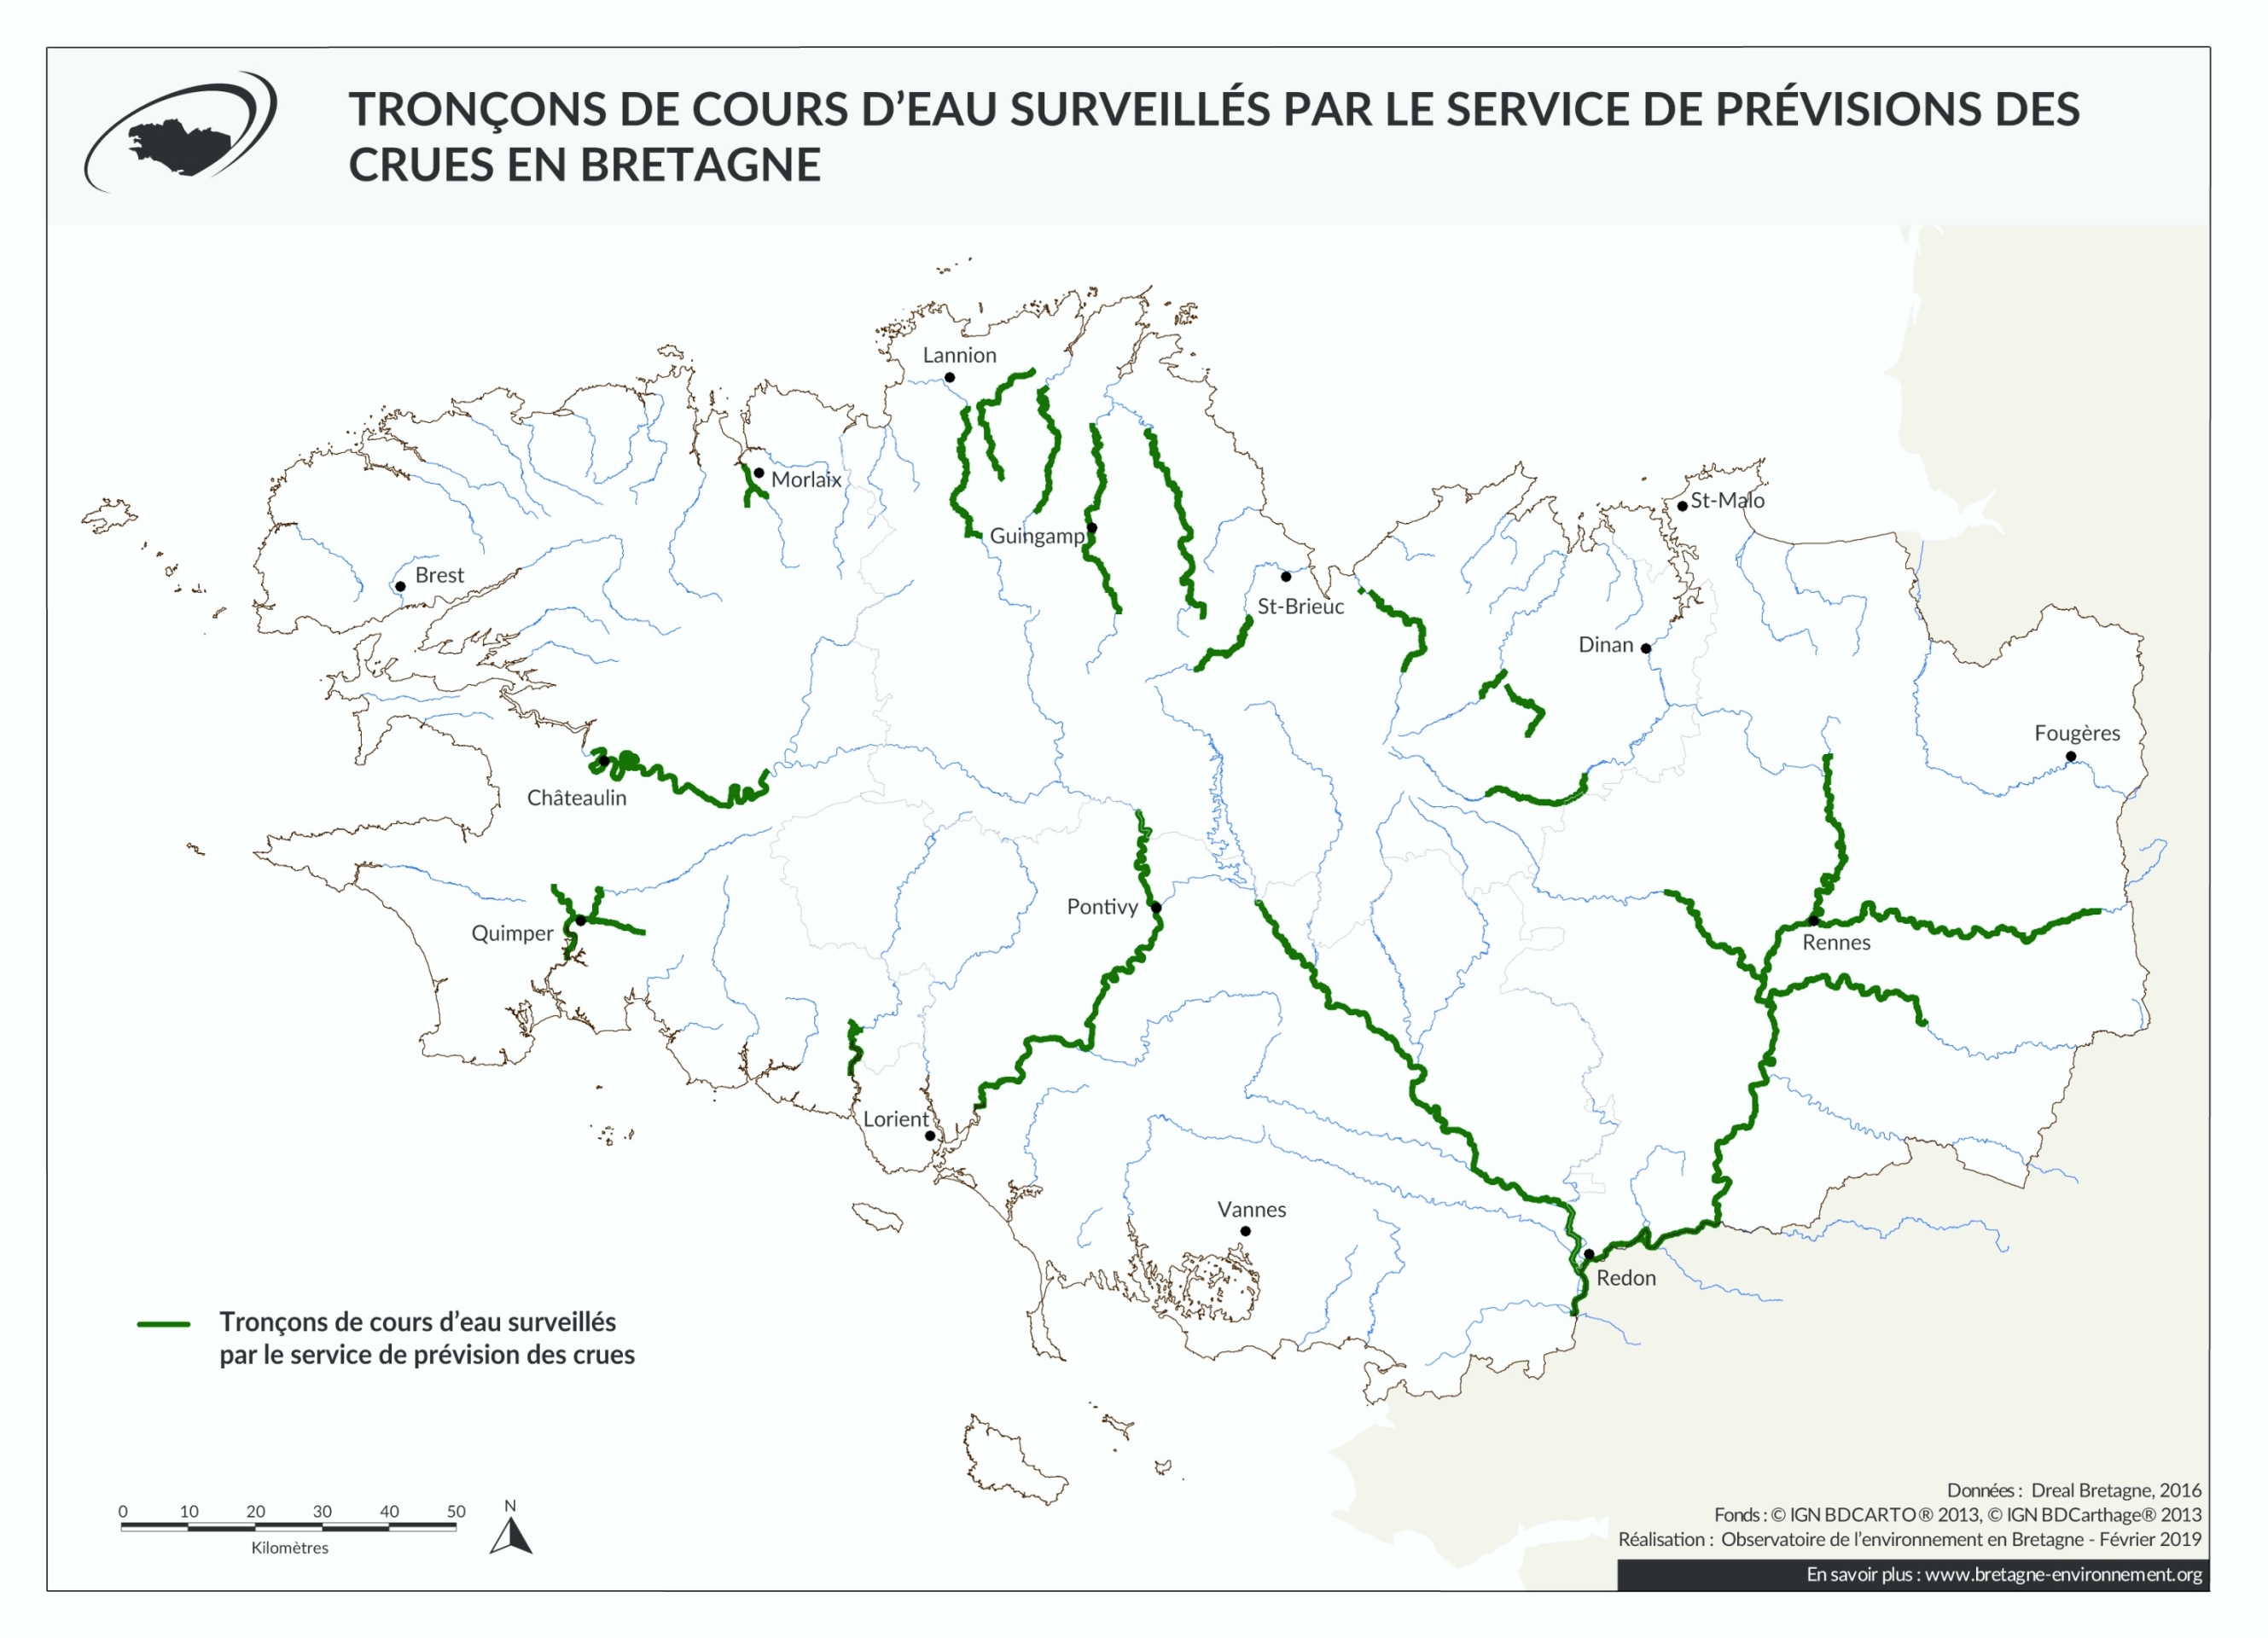 Tronçons de cours d'eau surveillés par le service de prévision des crues en Bretagne